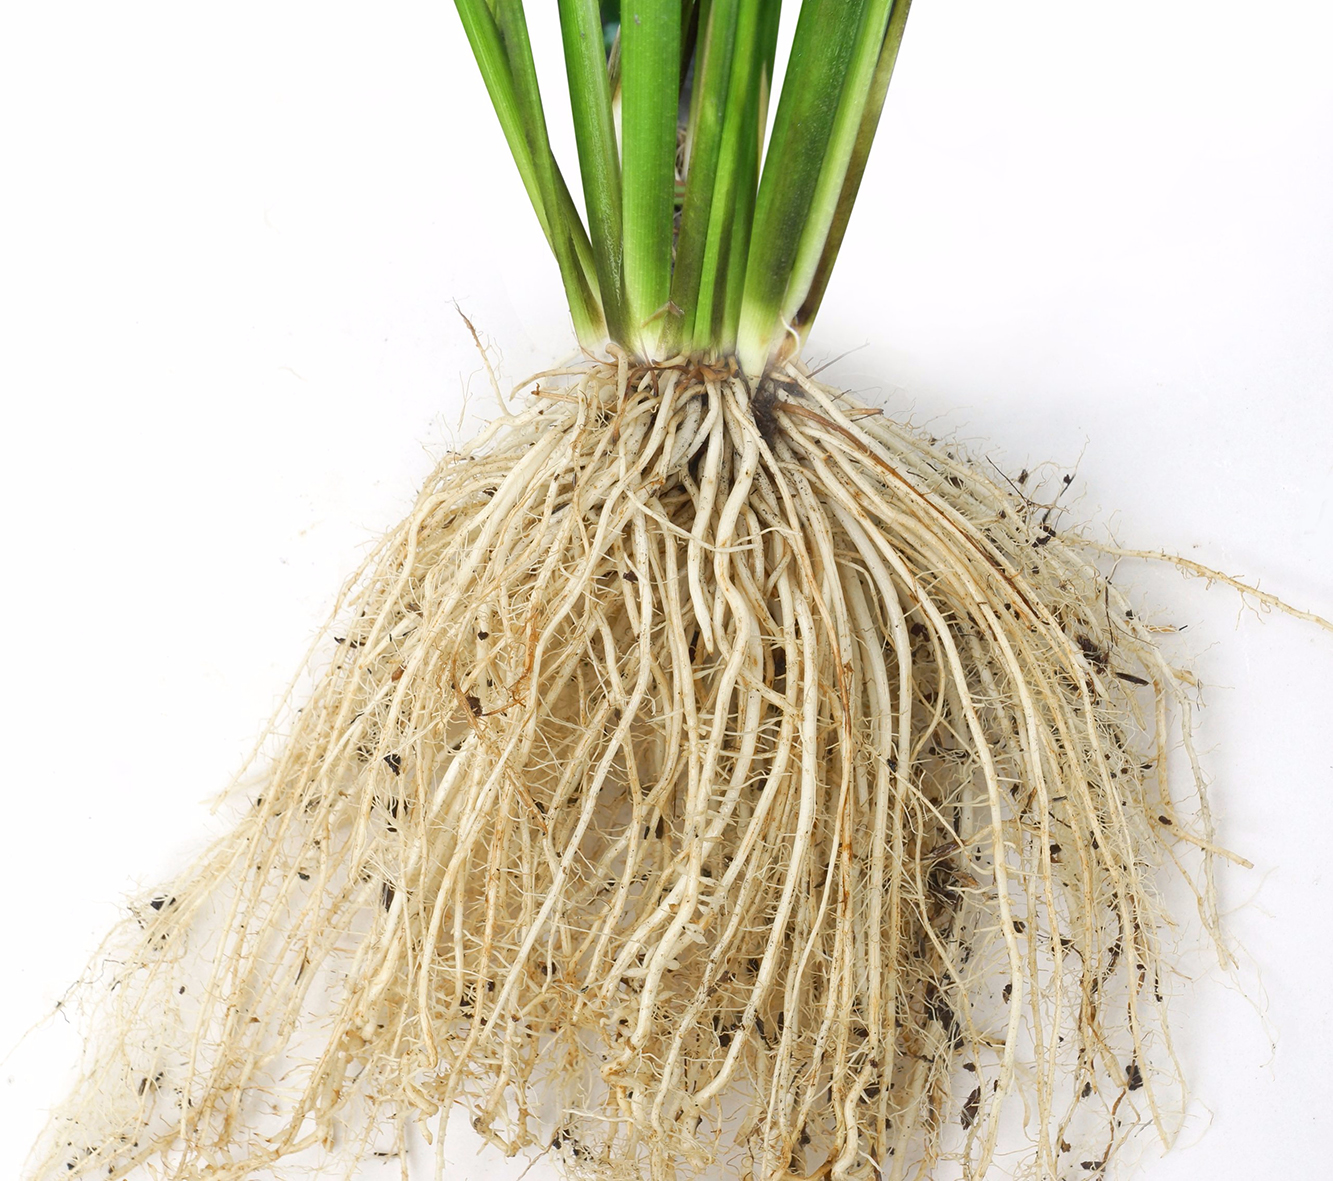 Sử dụng thuốc kích rễ Rocken IRIS giúp bộ rễ cây lúa phát triển mạnh mẽ tránh bị đỗ ngã